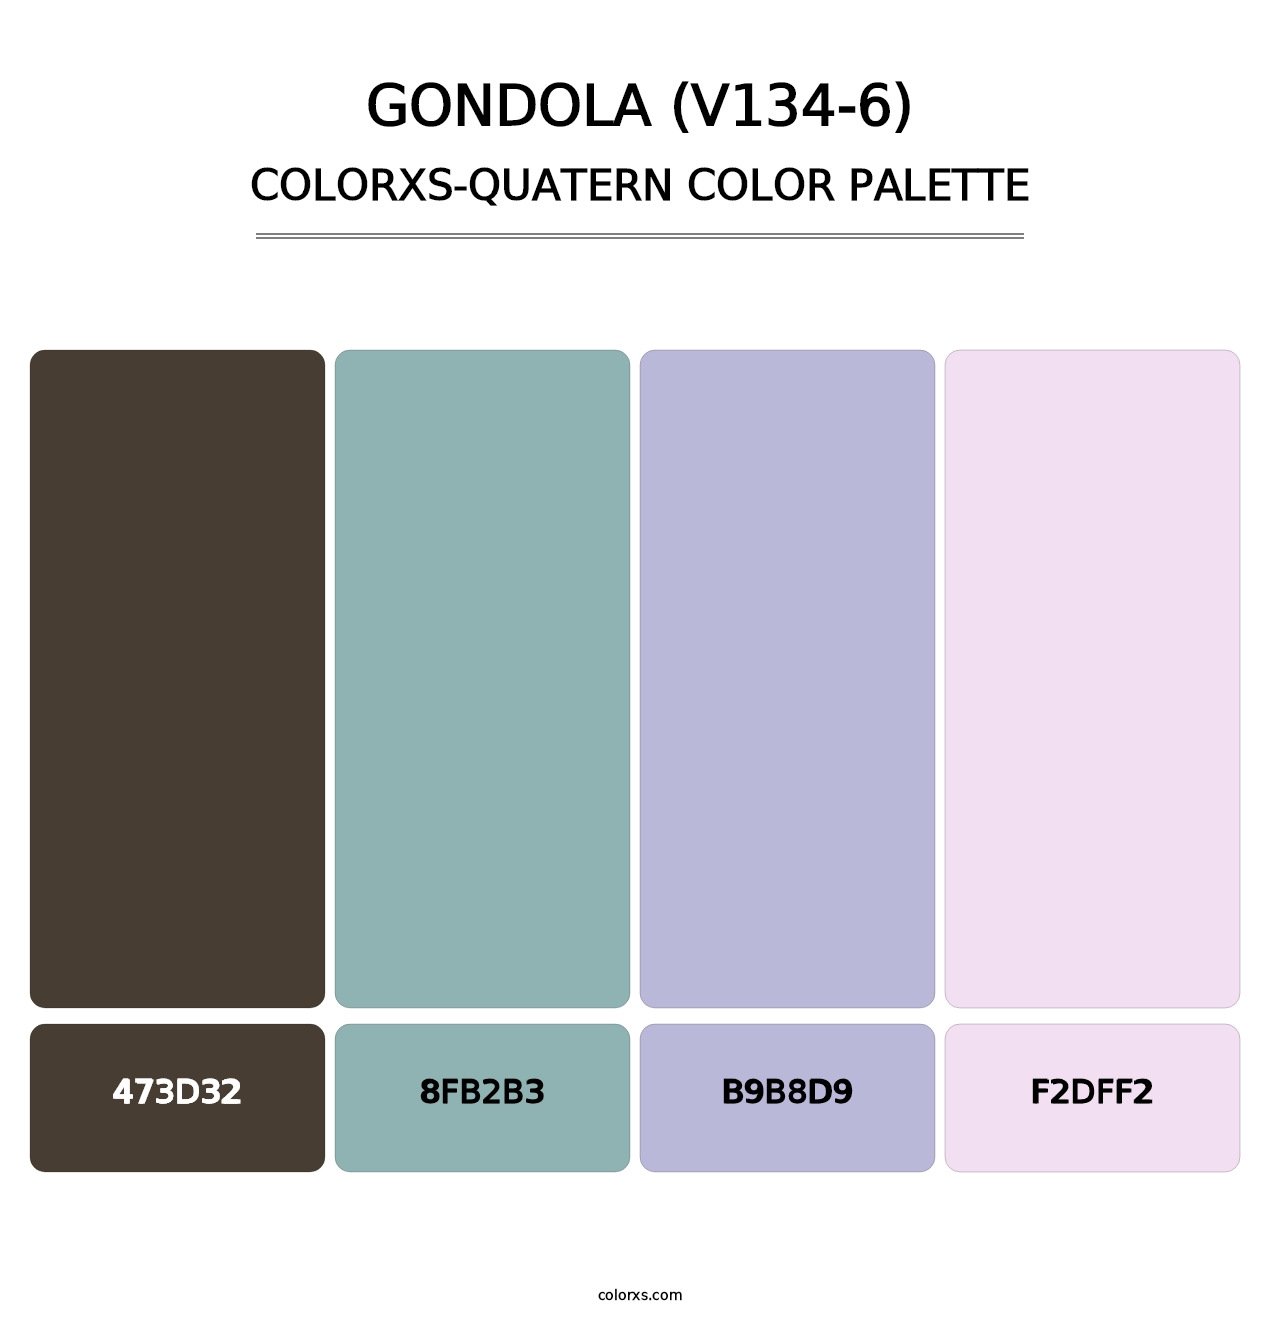 Gondola (V134-6) - Colorxs Quatern Palette